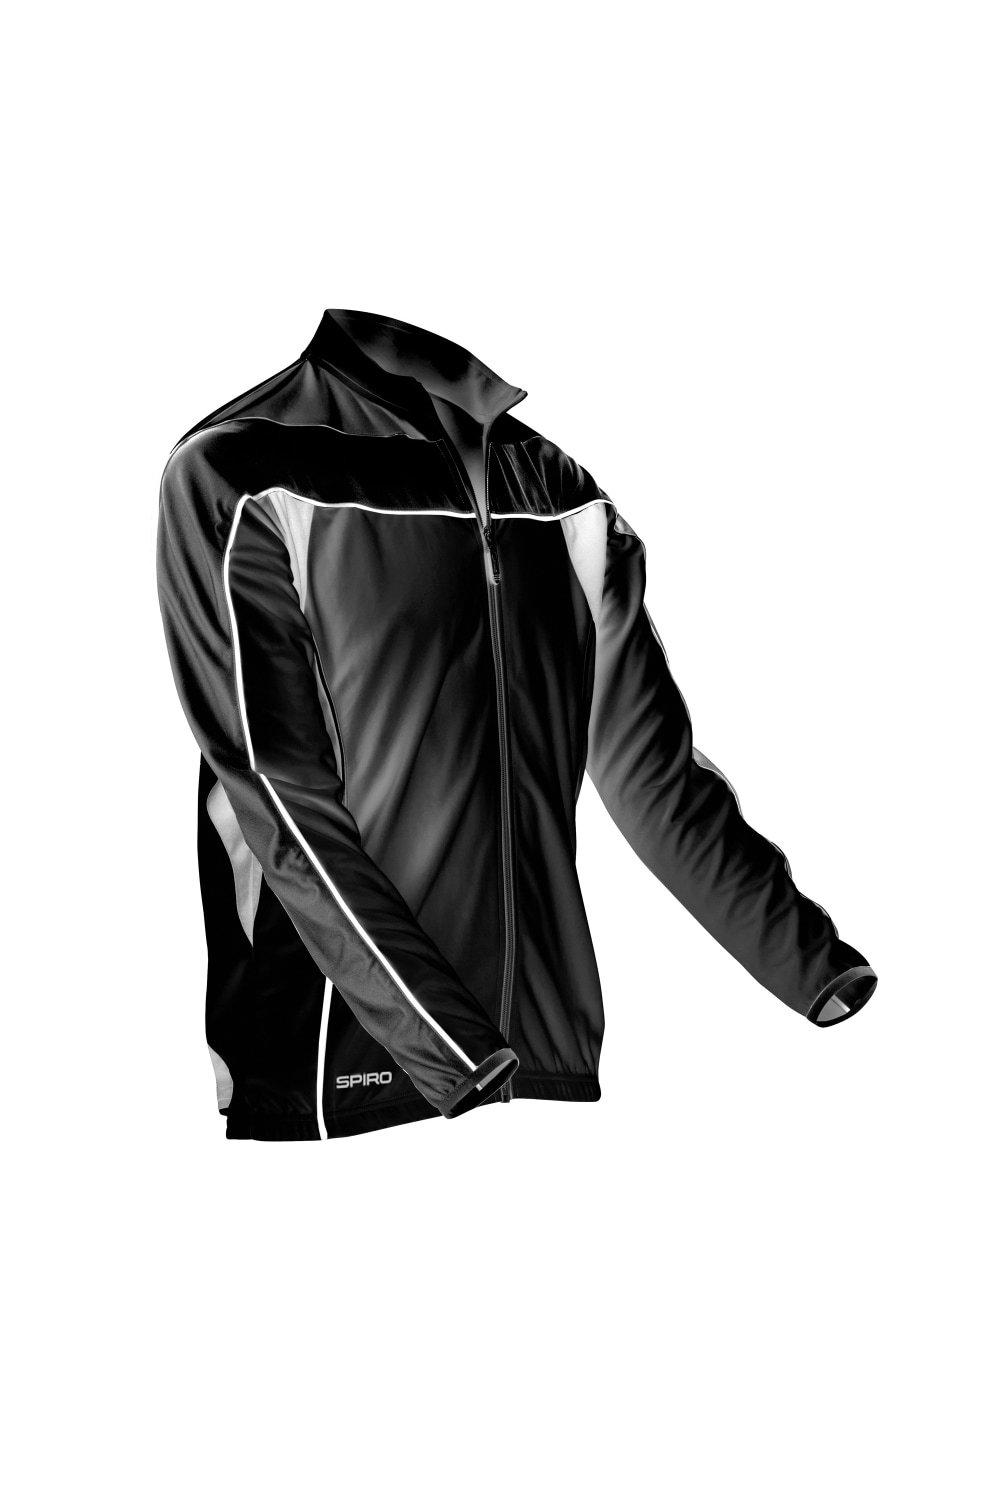 Одежда для велоспорта с длинным рукавом Performance Top Sports Cycling Spiro, черный комплект для велоспорта raudax 2021 с длинным рукавом дышащая одежда для горных велосипедов одежда для велоспорта летняя одежда для триатлон